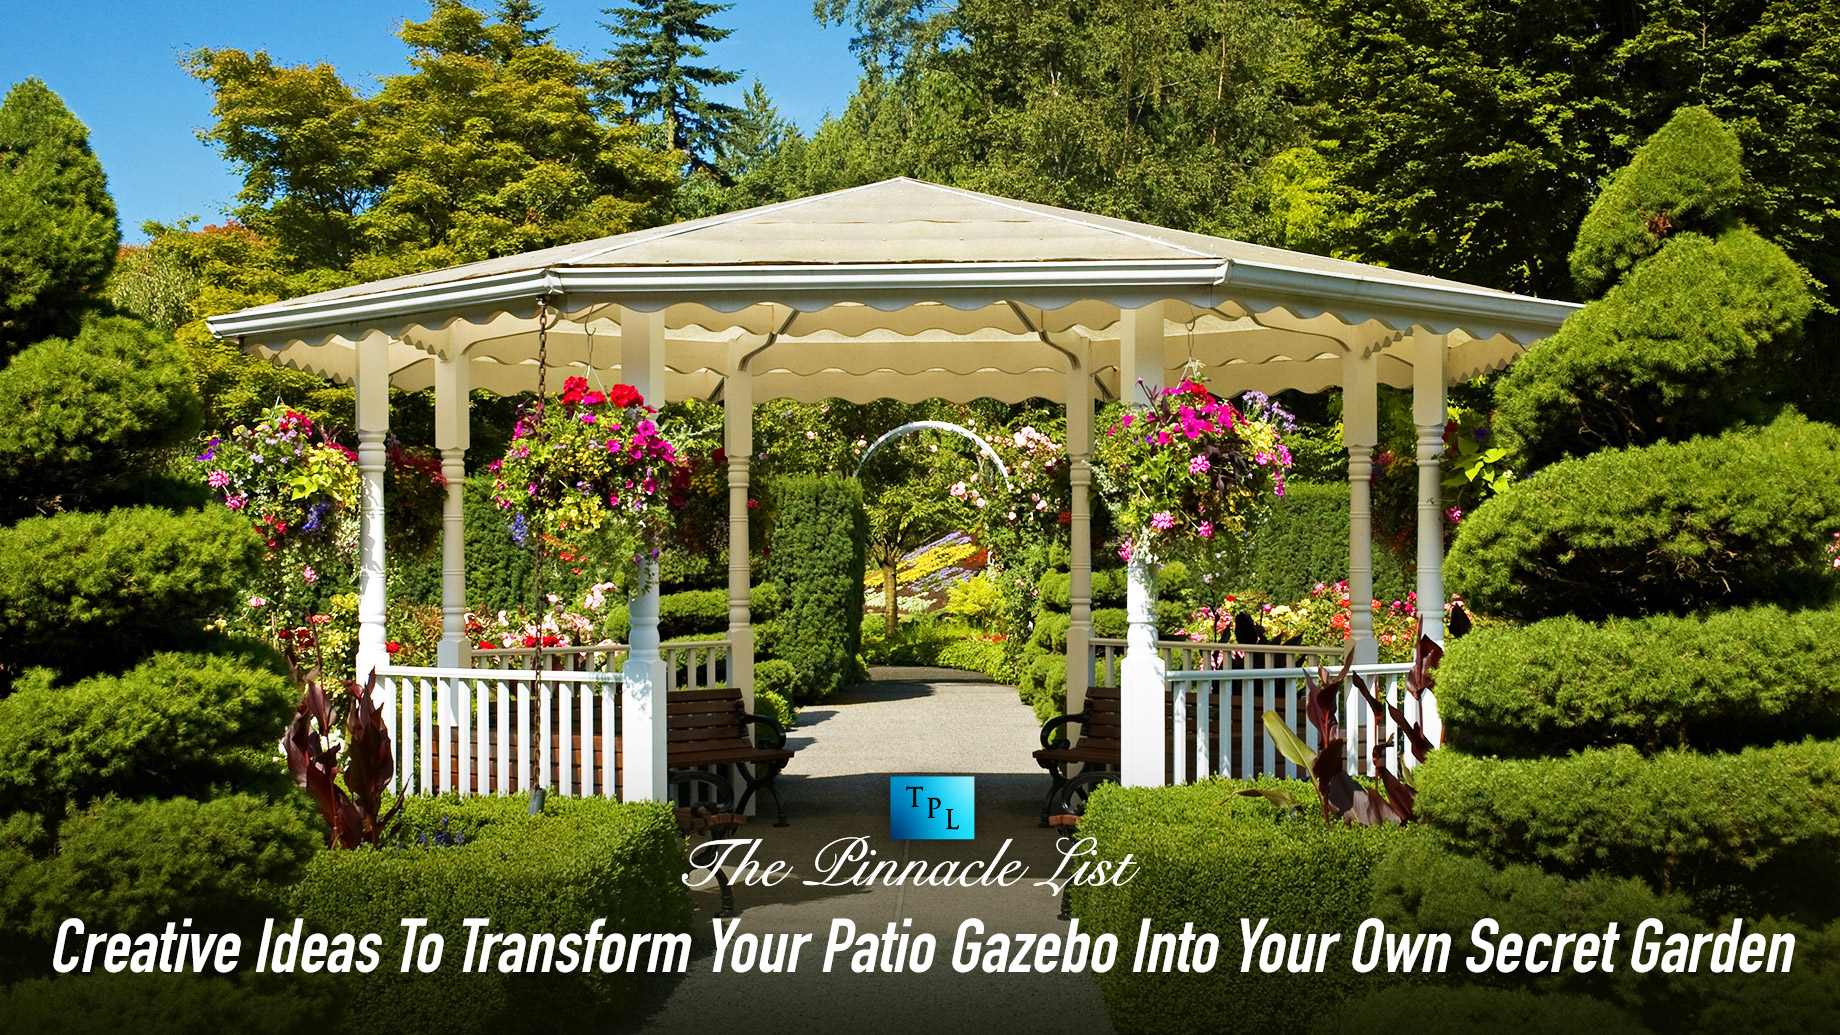 Creative Ideas To Transform Your Patio Gazebo Into Your Own Secret Garden